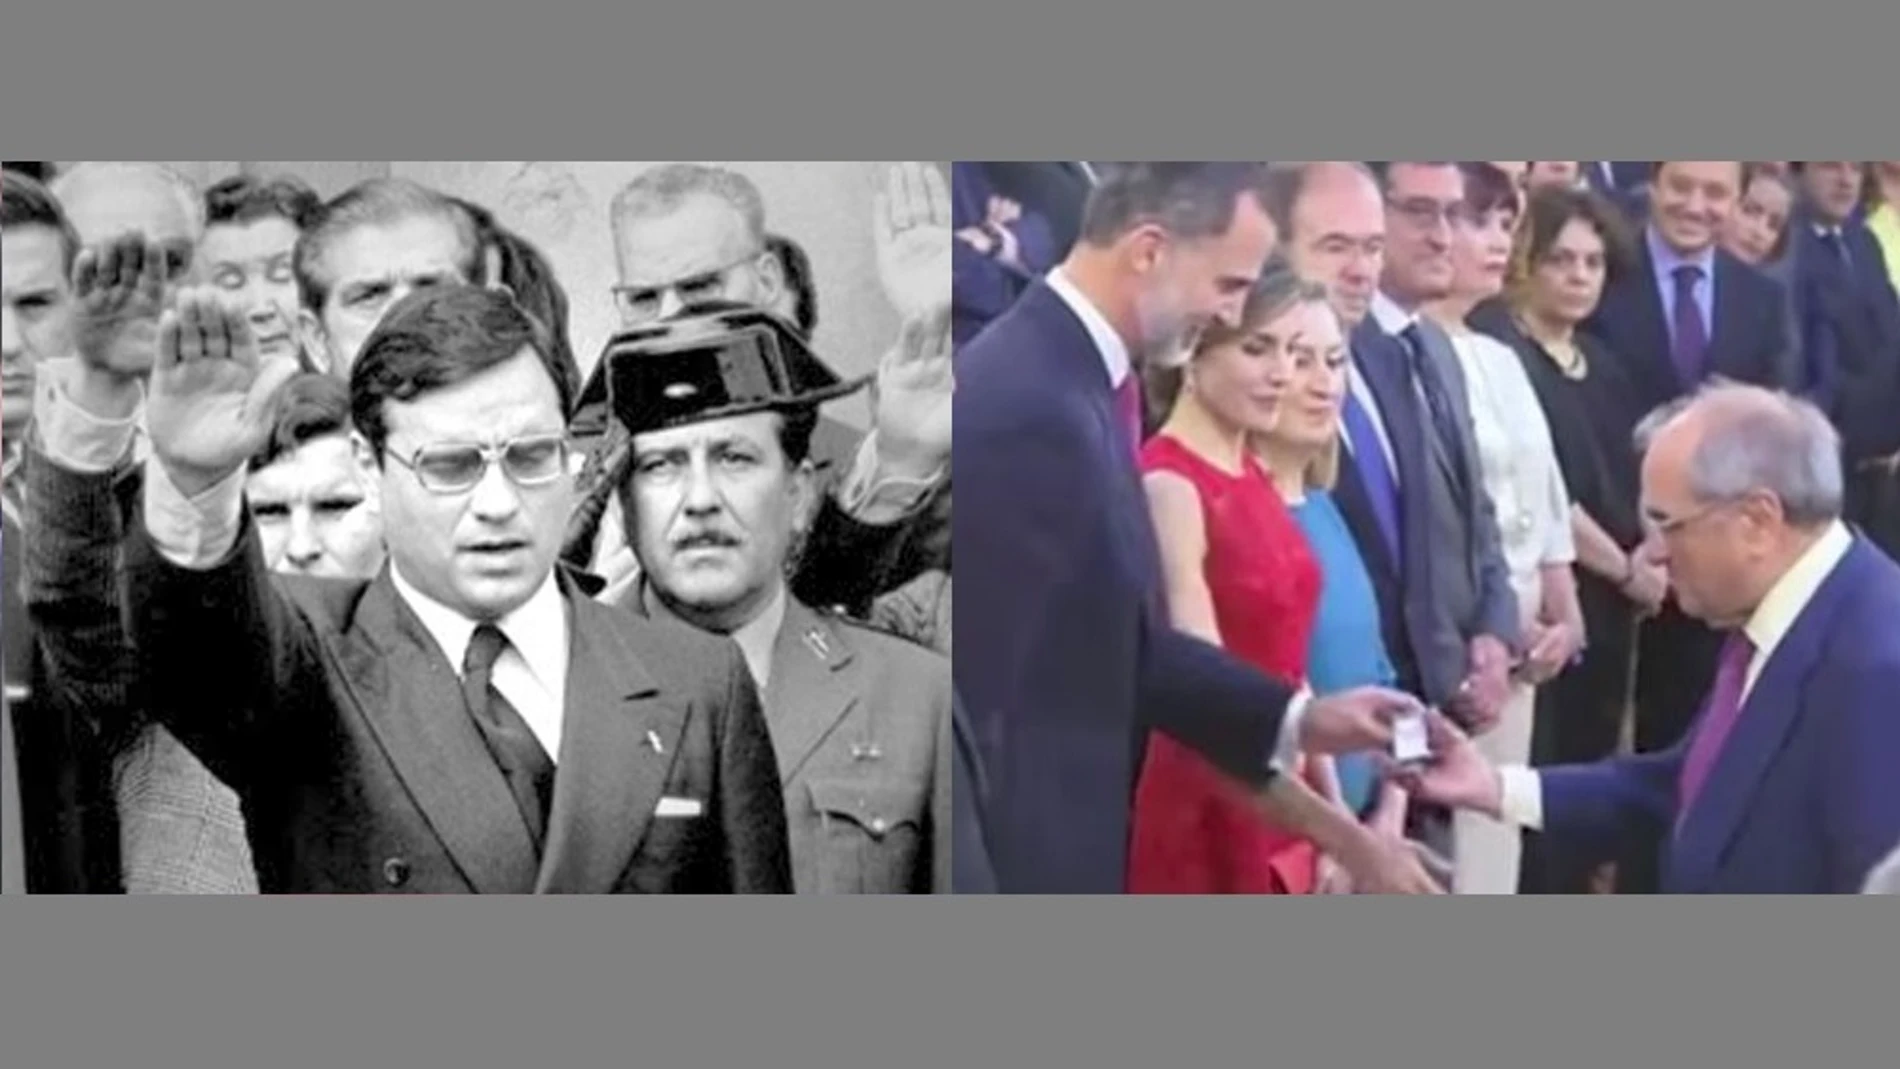 Martín Villa recogiendo la condecoración que le da Felipe VI y haciendo el saludo fascista | Archivo